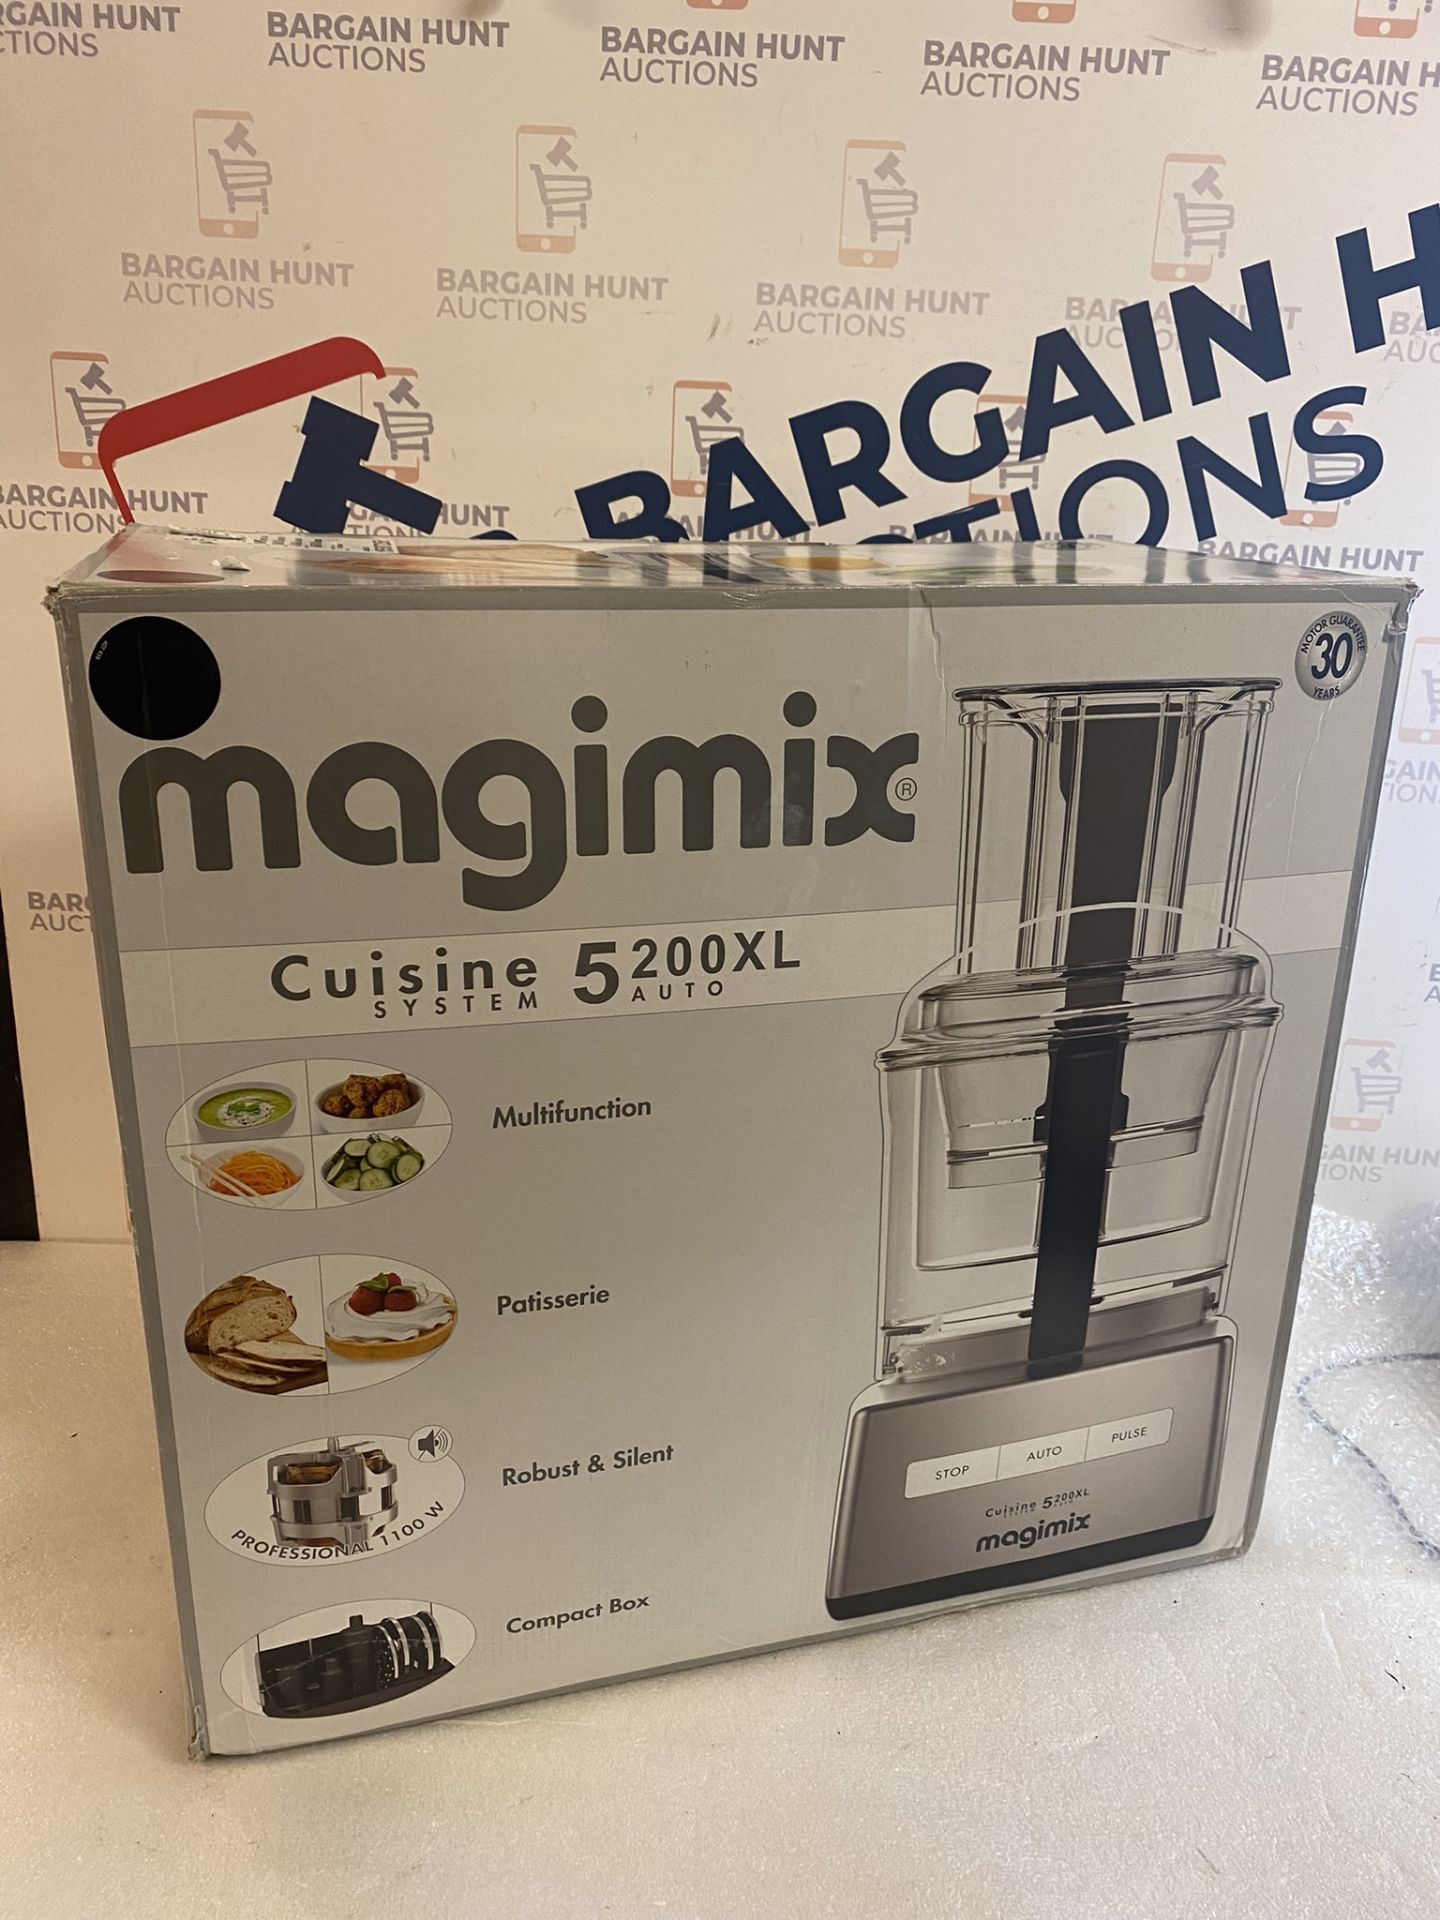 Magimix 5200XL Compact Food Processor RRP £349.99 - Image 2 of 3